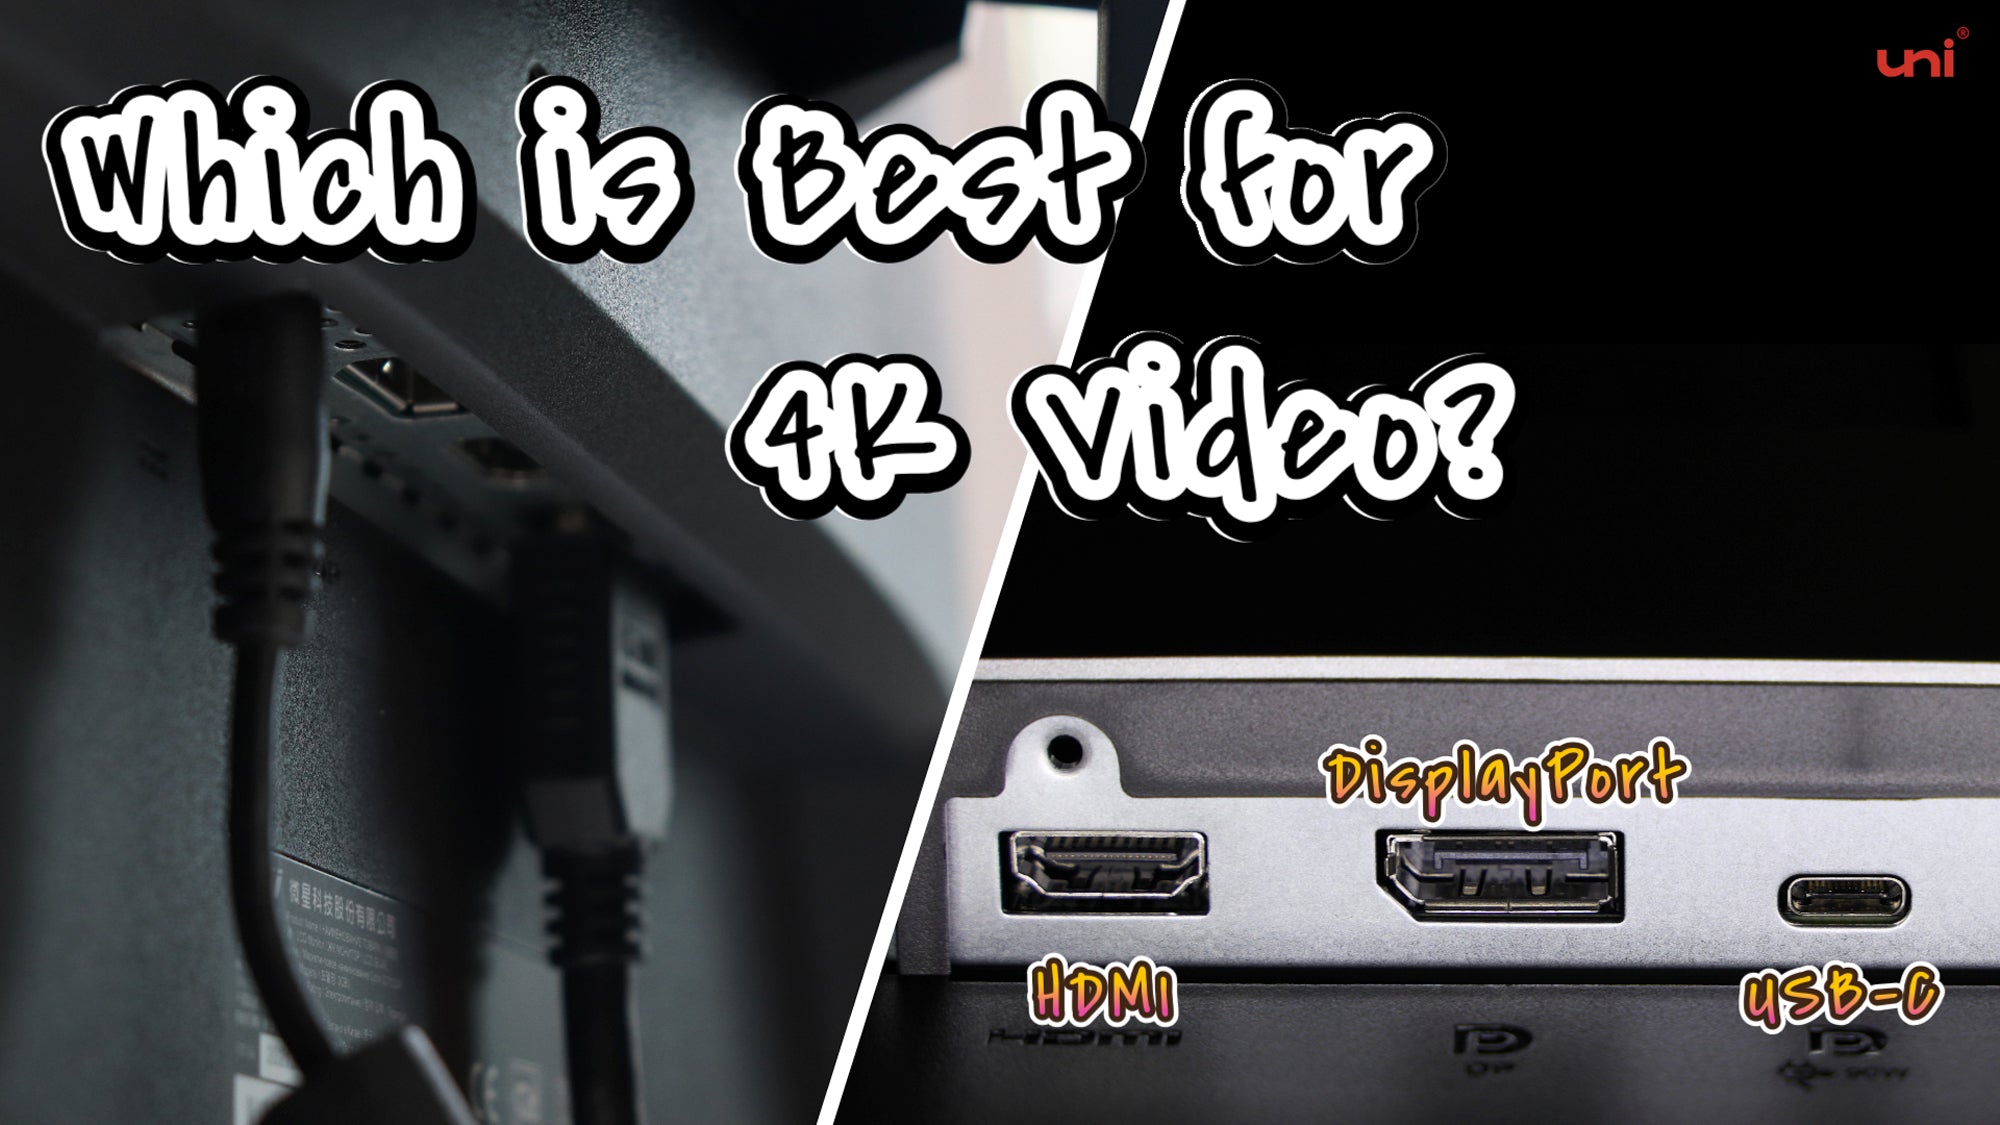 HDMI vs Displayport vs USB C 4k Video